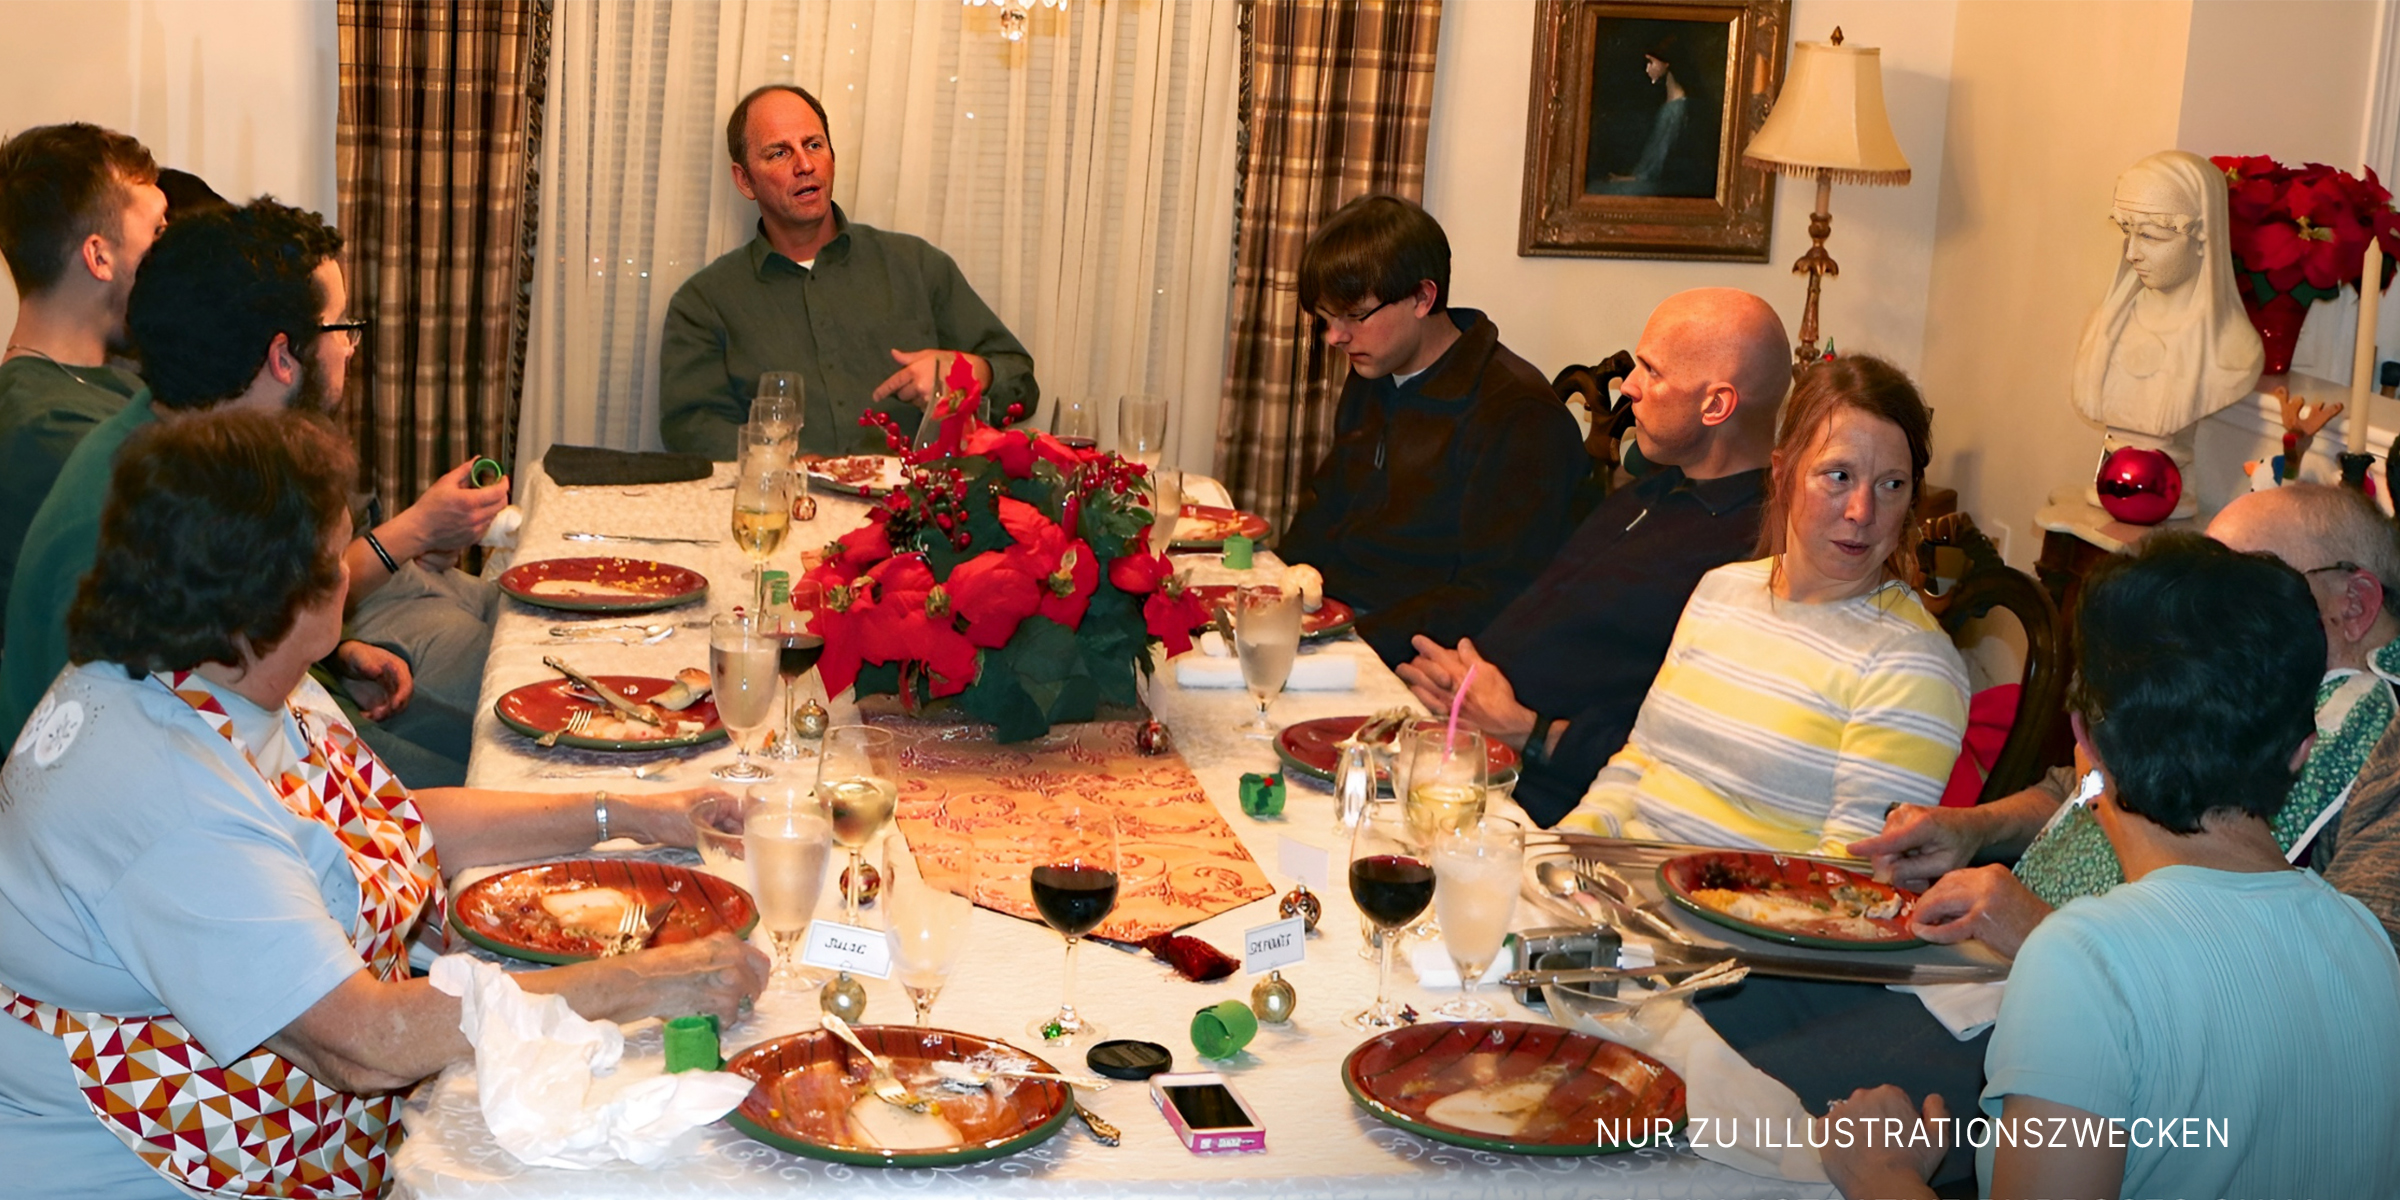 Eine Familie bei einer Mahlzeit am Tisch | Quelle: flickr.com/OakleyOriginals/CC BY 2.0